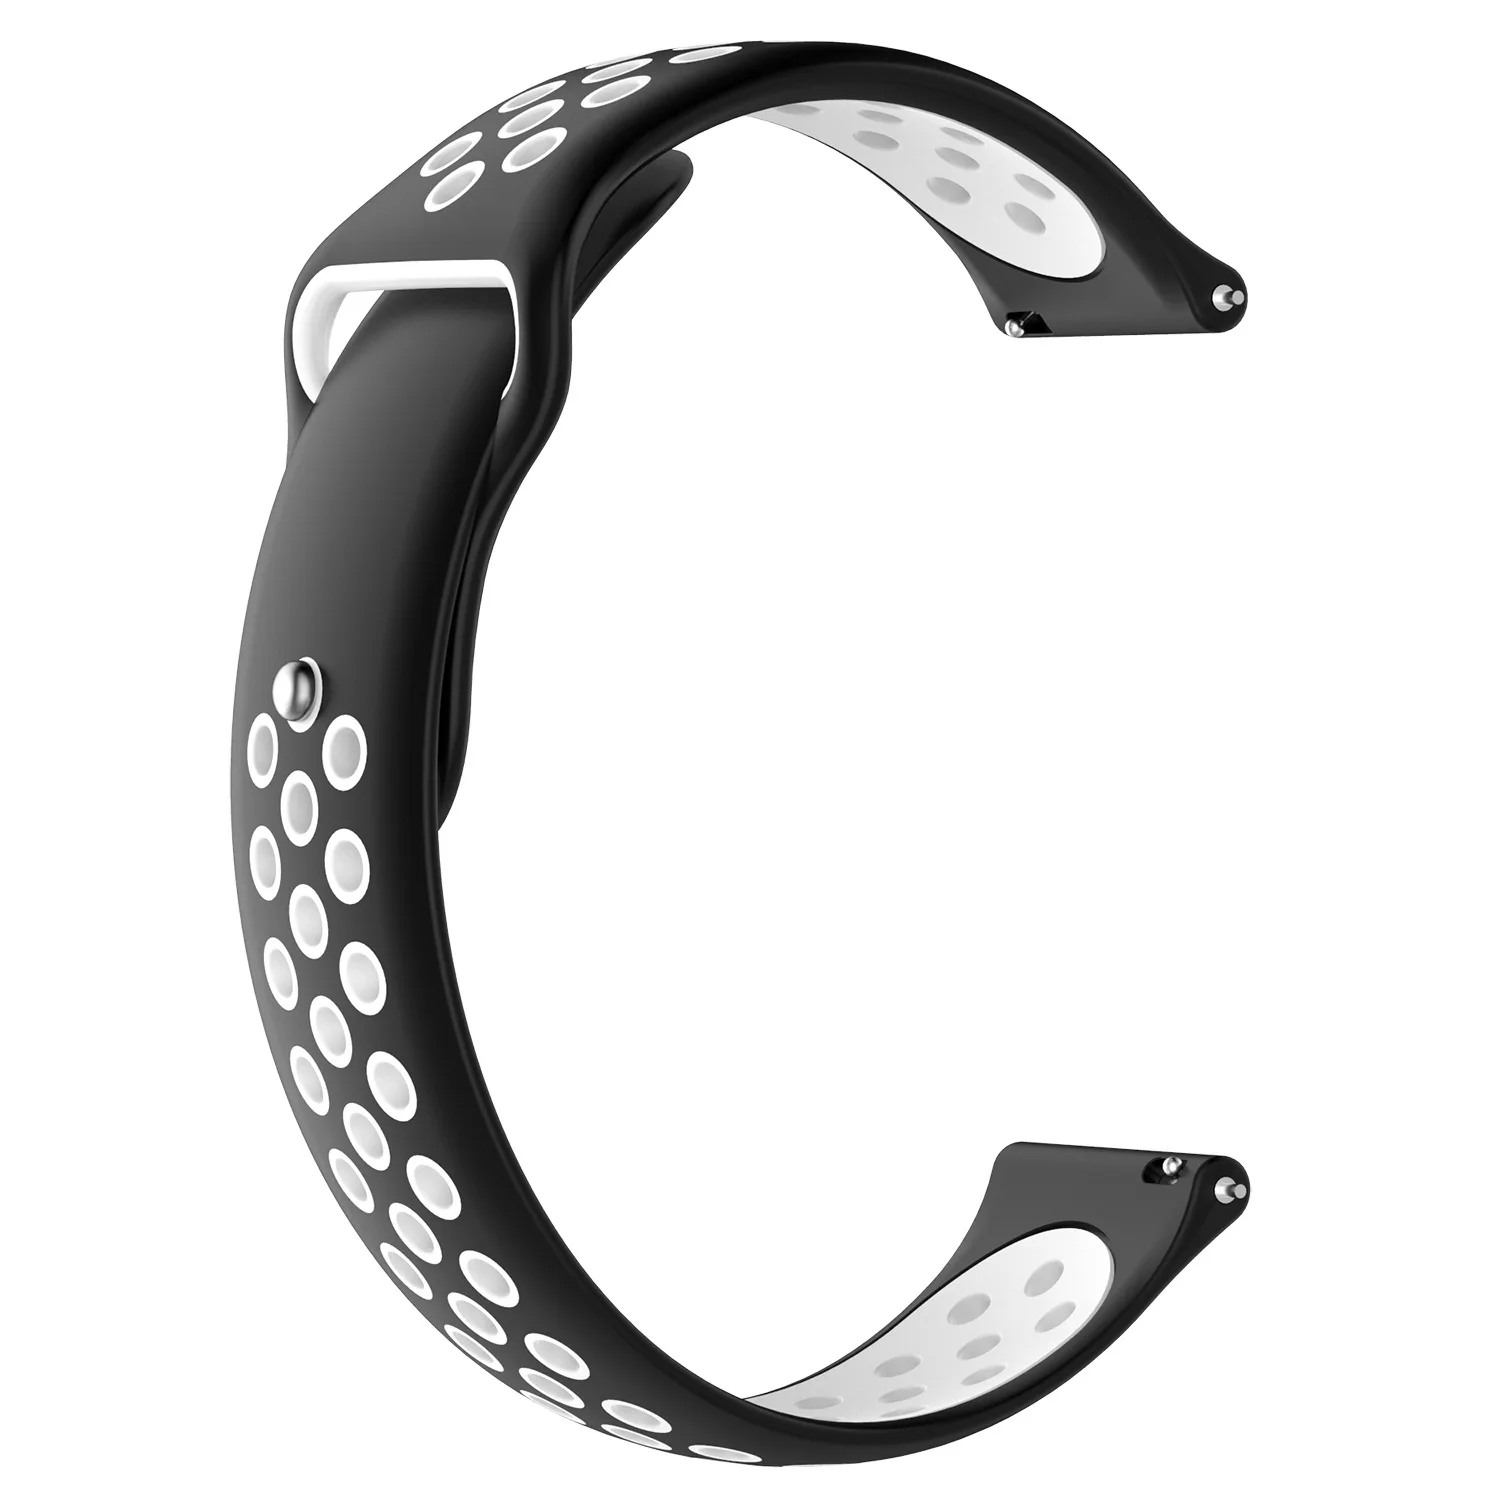 Силиконовый браслет для Huami Amazfit Bip ремешок gts ремешок 20 мм 22 мм ремешок для Amazfit stratos pace GTR браслет - Цвет: black white